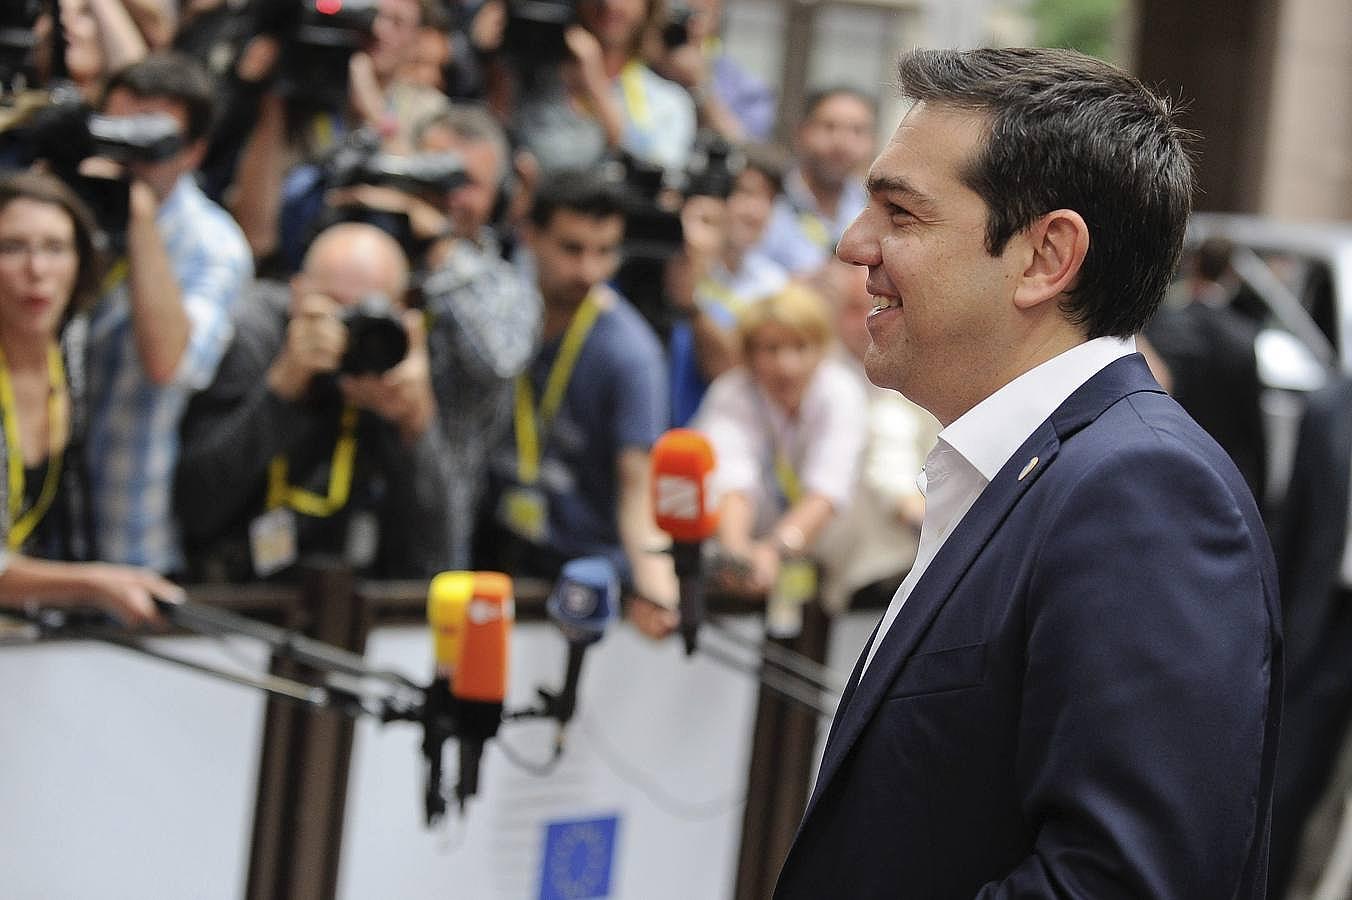 Grecia mira hacia Bruselas donde el primer ministro, Alexis Tsipras, buscará reiniciar las negociaciones con los acreedores